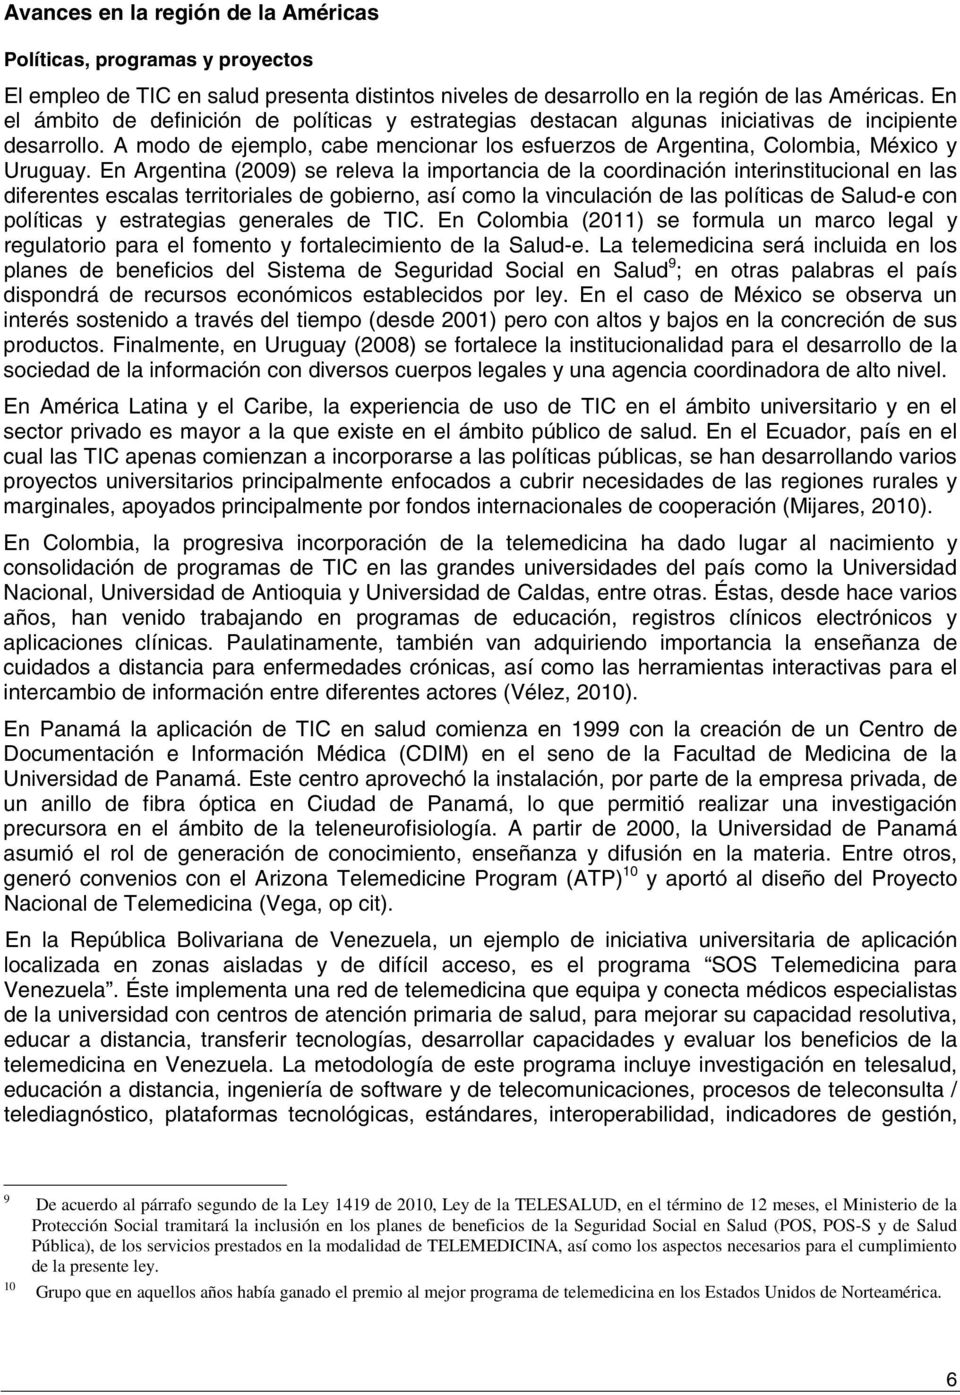 En Argentina (2009) se releva la importancia de la coordinación interinstitucional en las diferentes escalas territoriales de gobierno, así como la vinculación de las políticas de Salud-e con